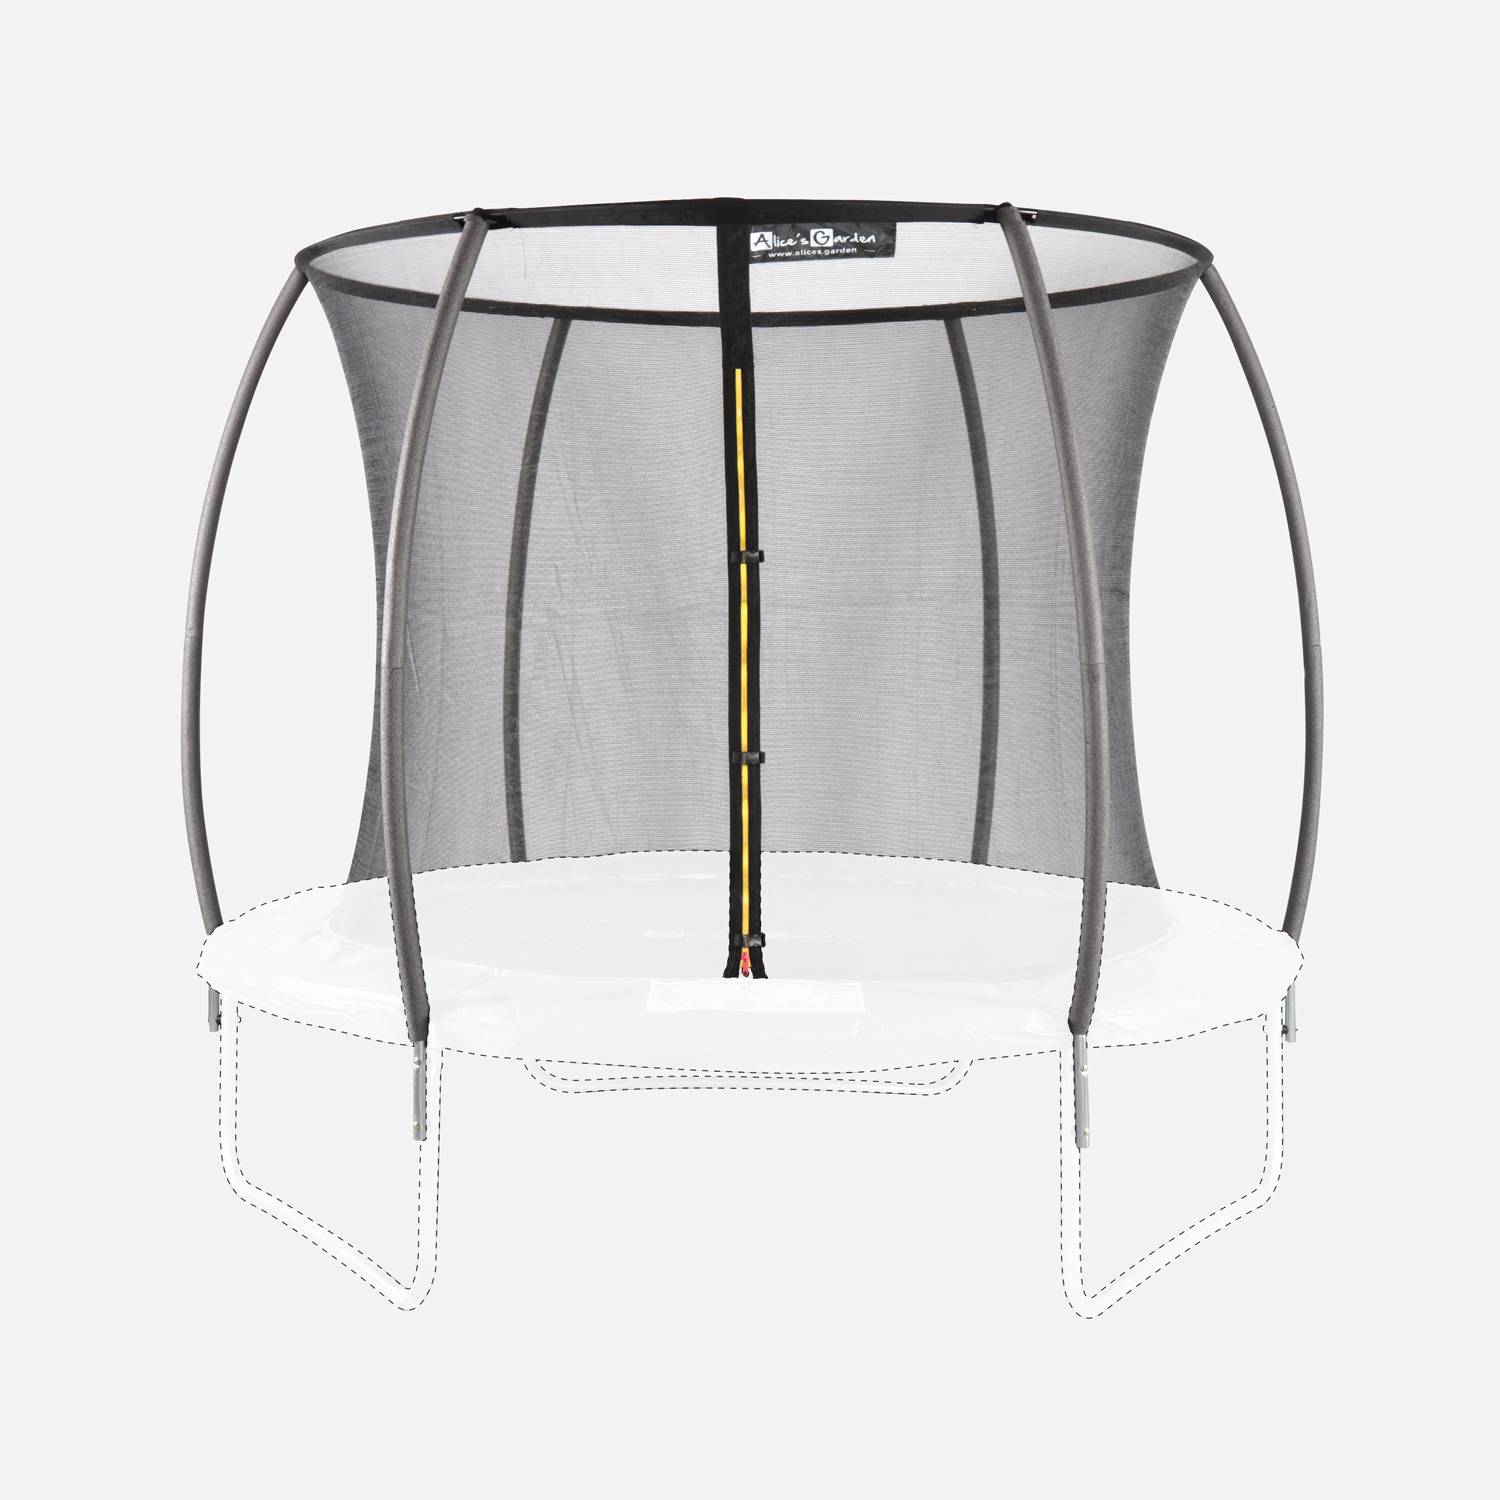 Kit de remplacement de filet de protection de trampoline, ANTARES INNER, pour trampoline Pluton Ø250cm Photo2